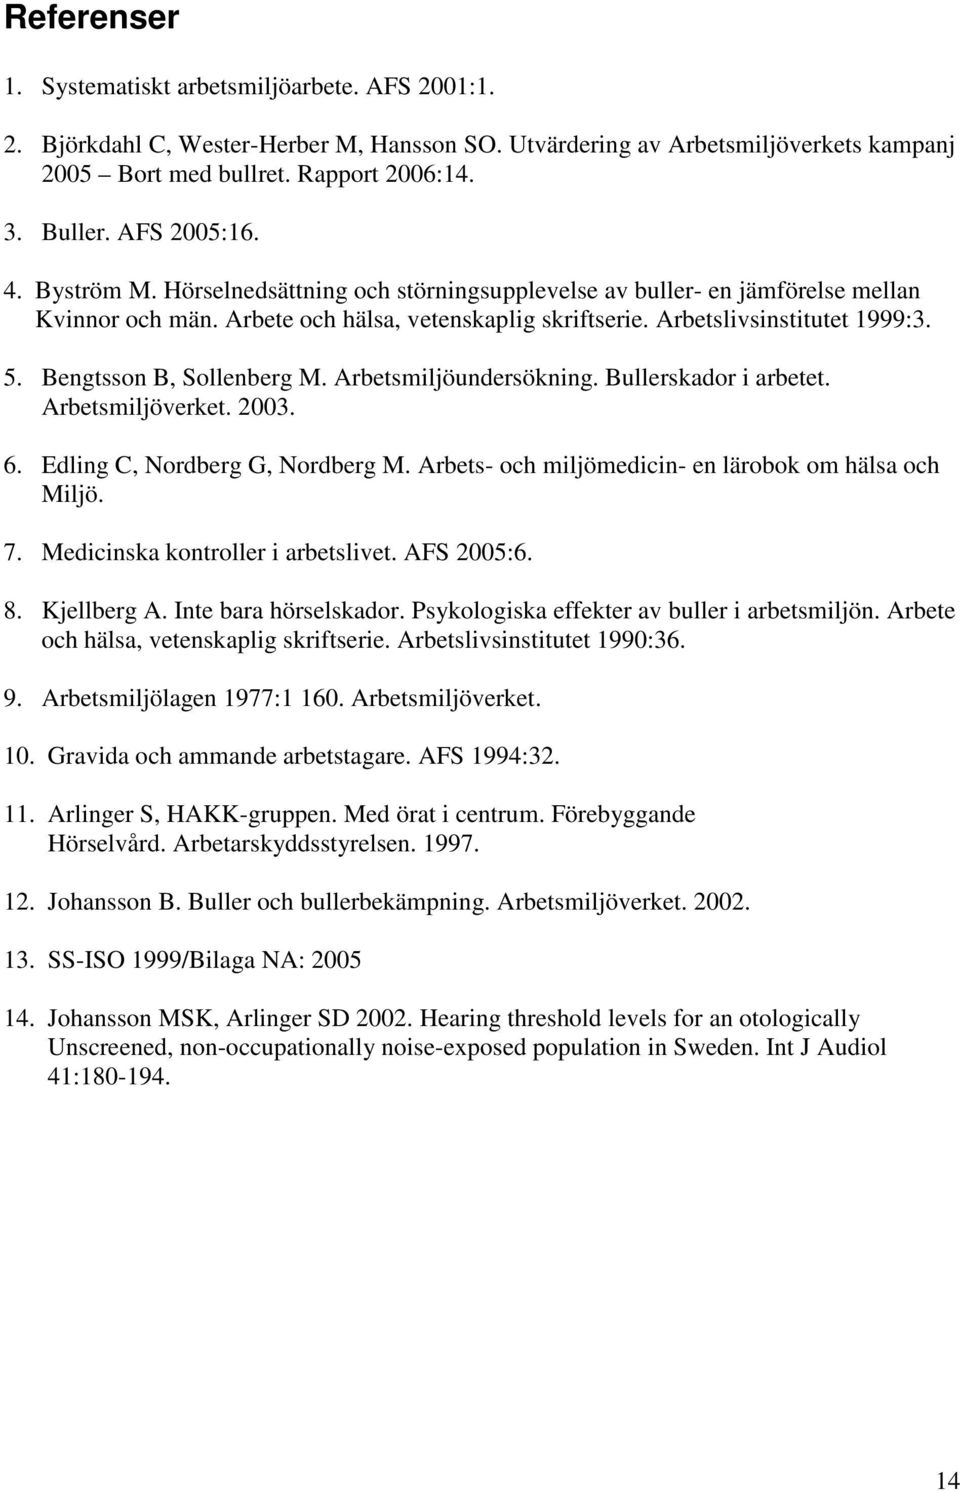 Bengtsson B, Sollenberg M. Arbetsmiljöundersökning. Bullerskador i arbetet. Arbetsmiljöverket. 2003. 6. Edling C, Nordberg G, Nordberg M. Arbets- och miljömedicin- en lärobok om hälsa och Miljö. 7.